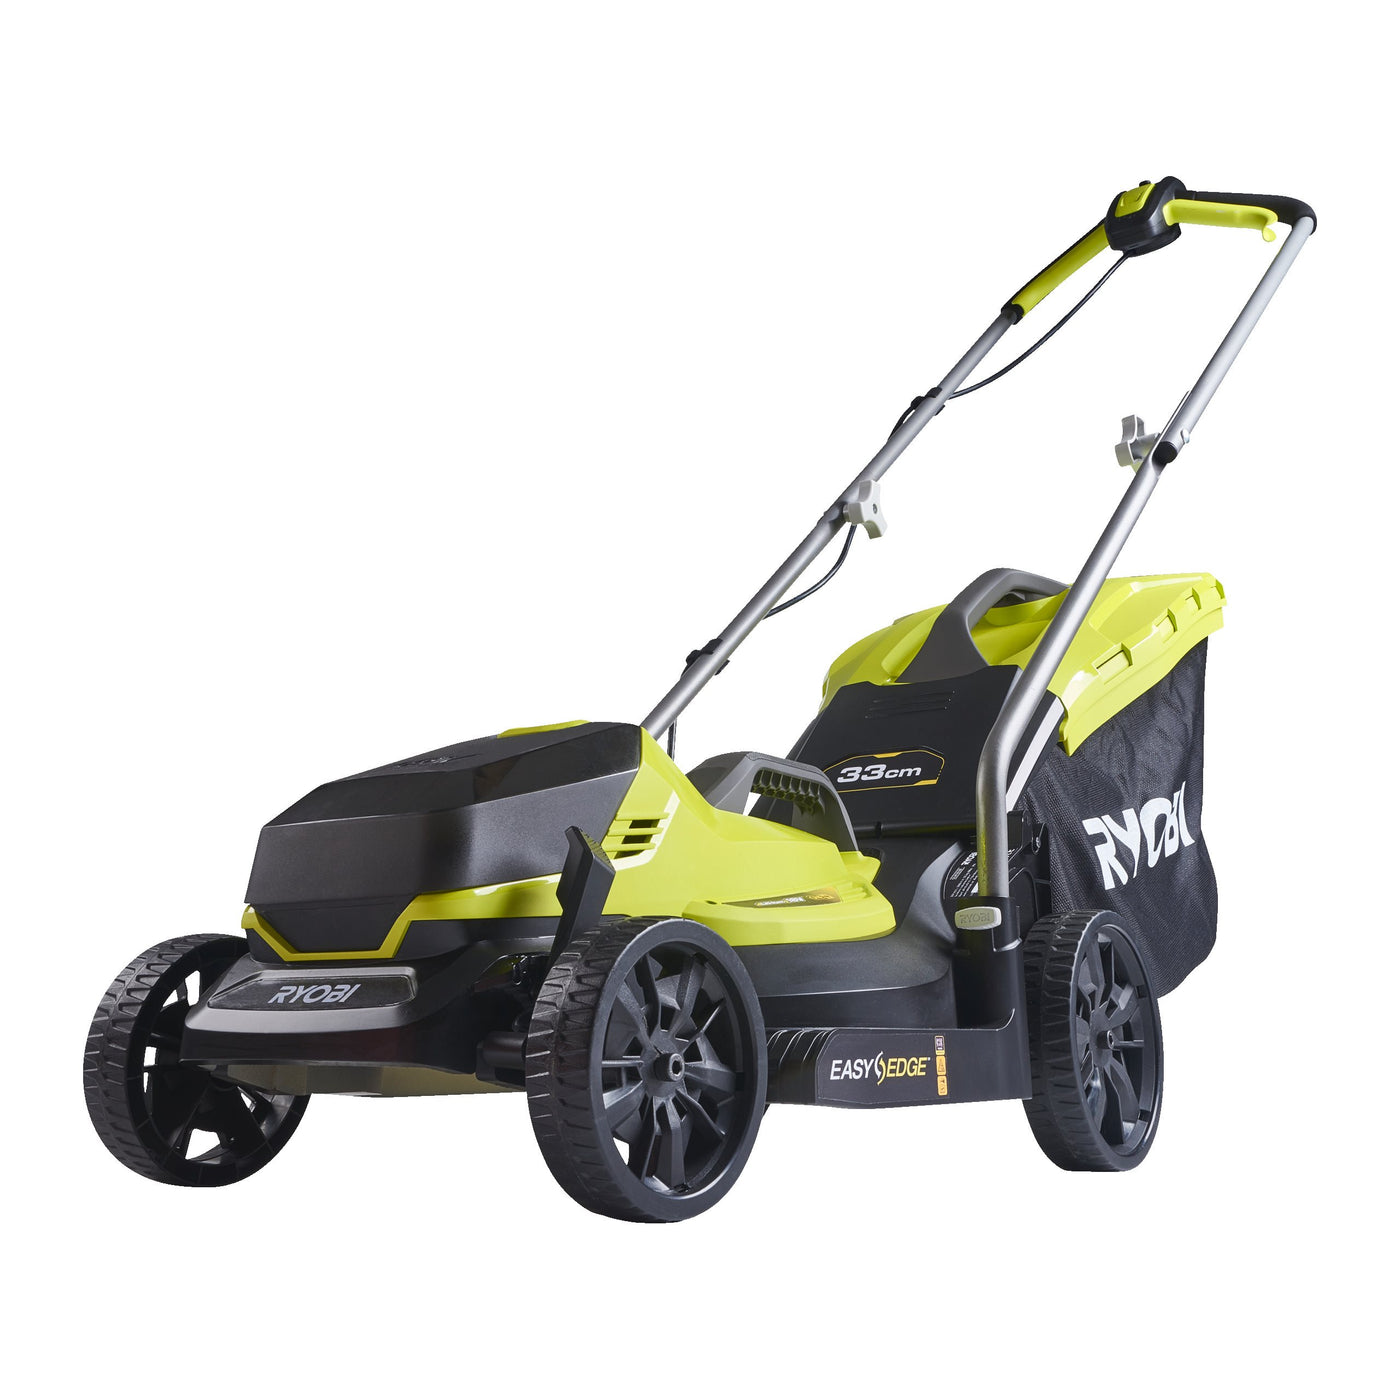 Ryobi OLM1833B 18V ONE+ 33cm Cordless Lawn Mower (Bare Tool)